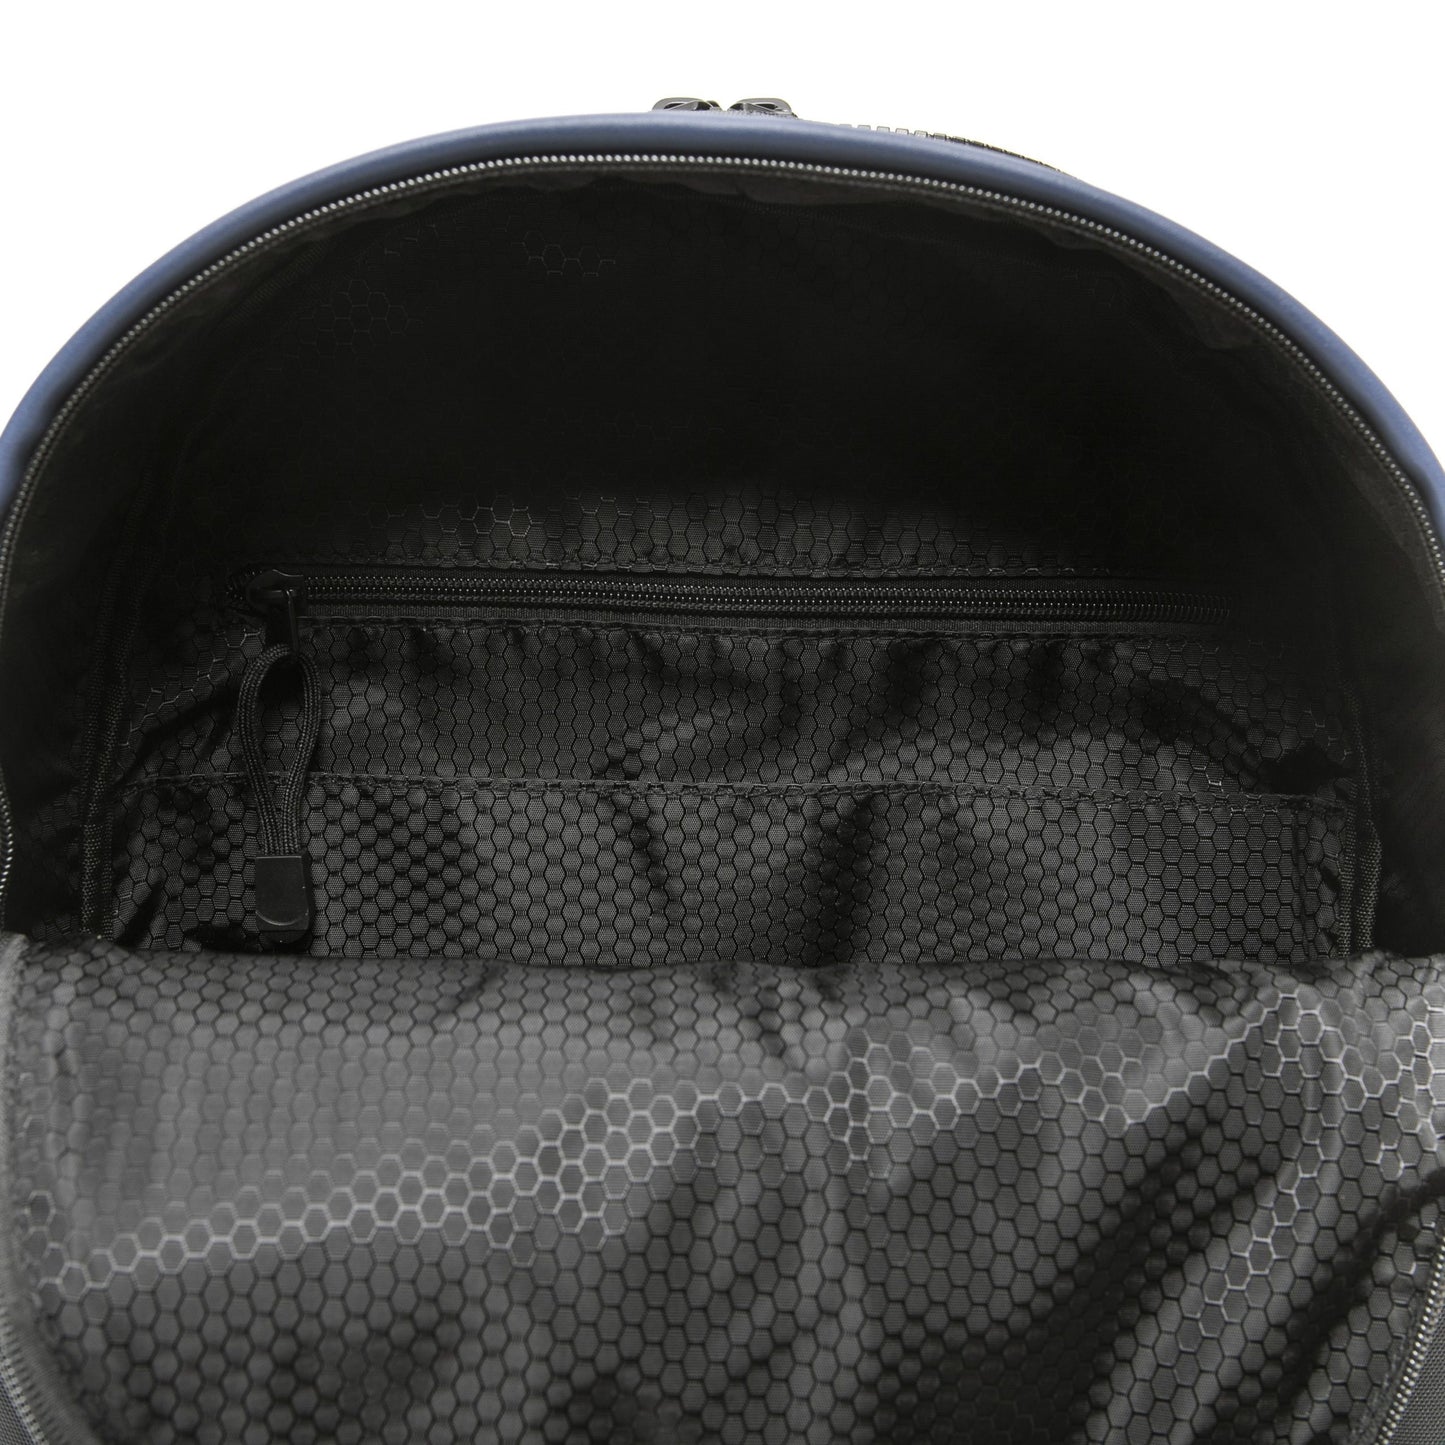 Nero Black Backpack